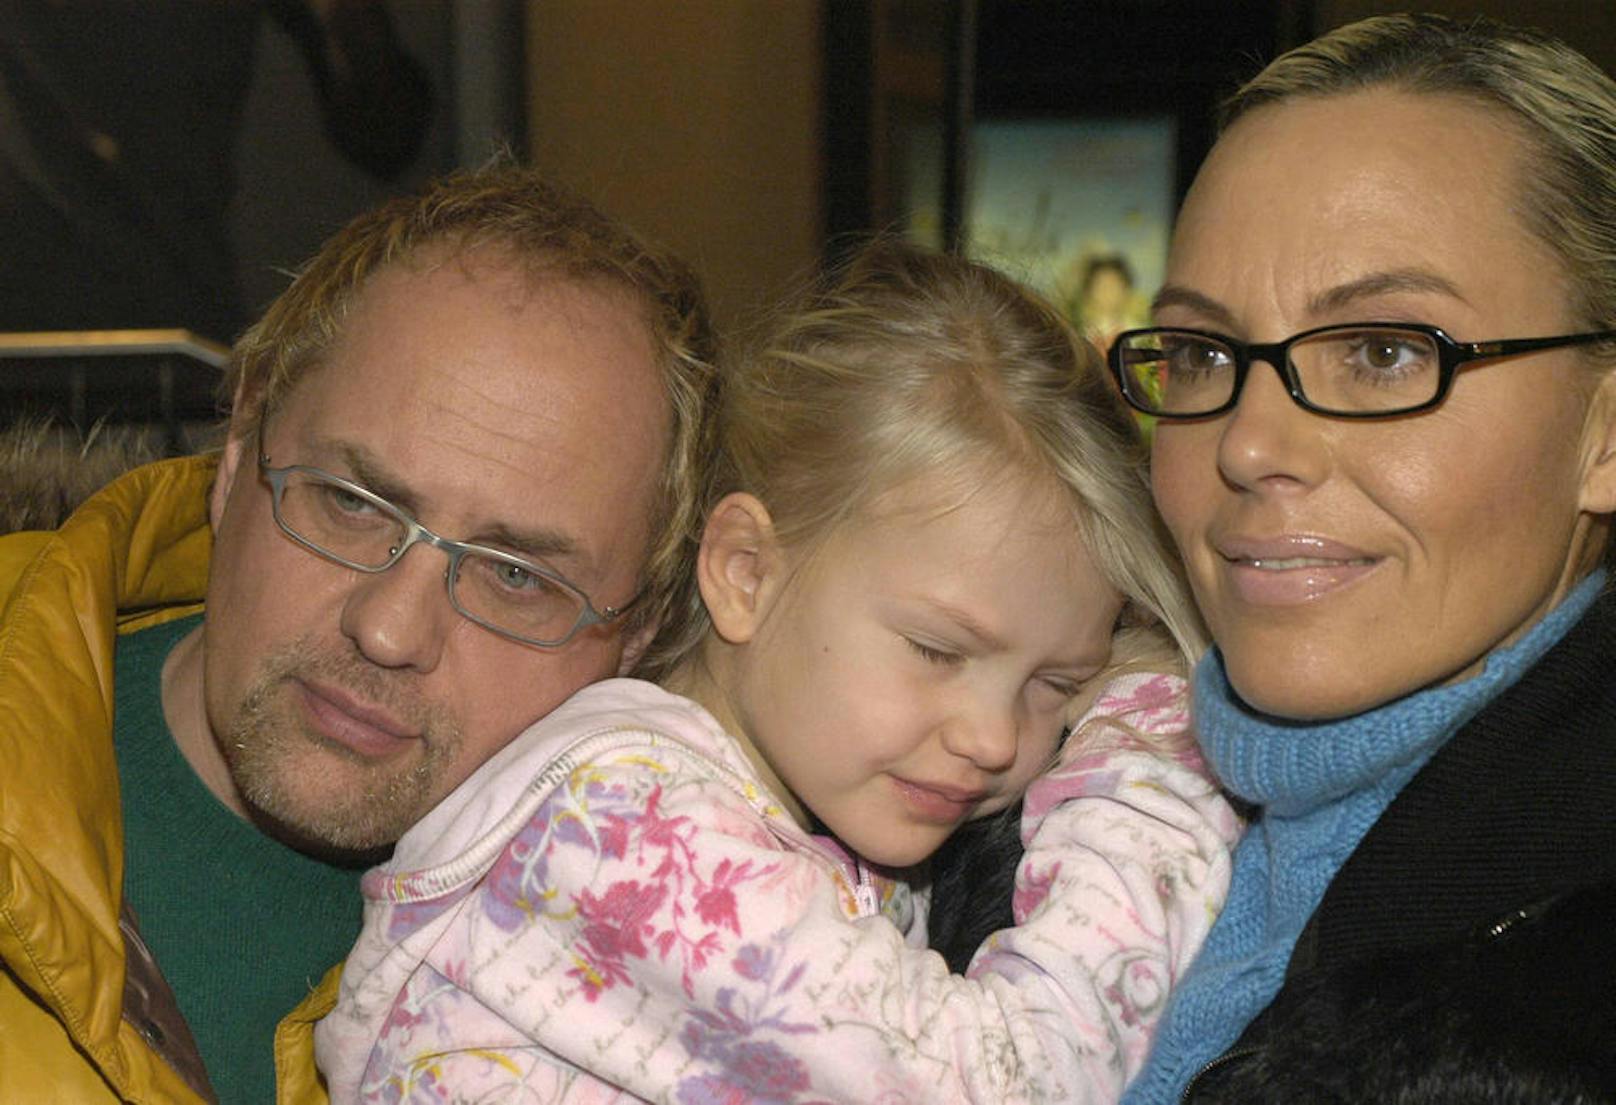 Lange ists her: Cheyenne mit ihren Eltern Natascha und Uwe. Nach 20 Ehejahren war 2009 Schluss mit der Beziehung.